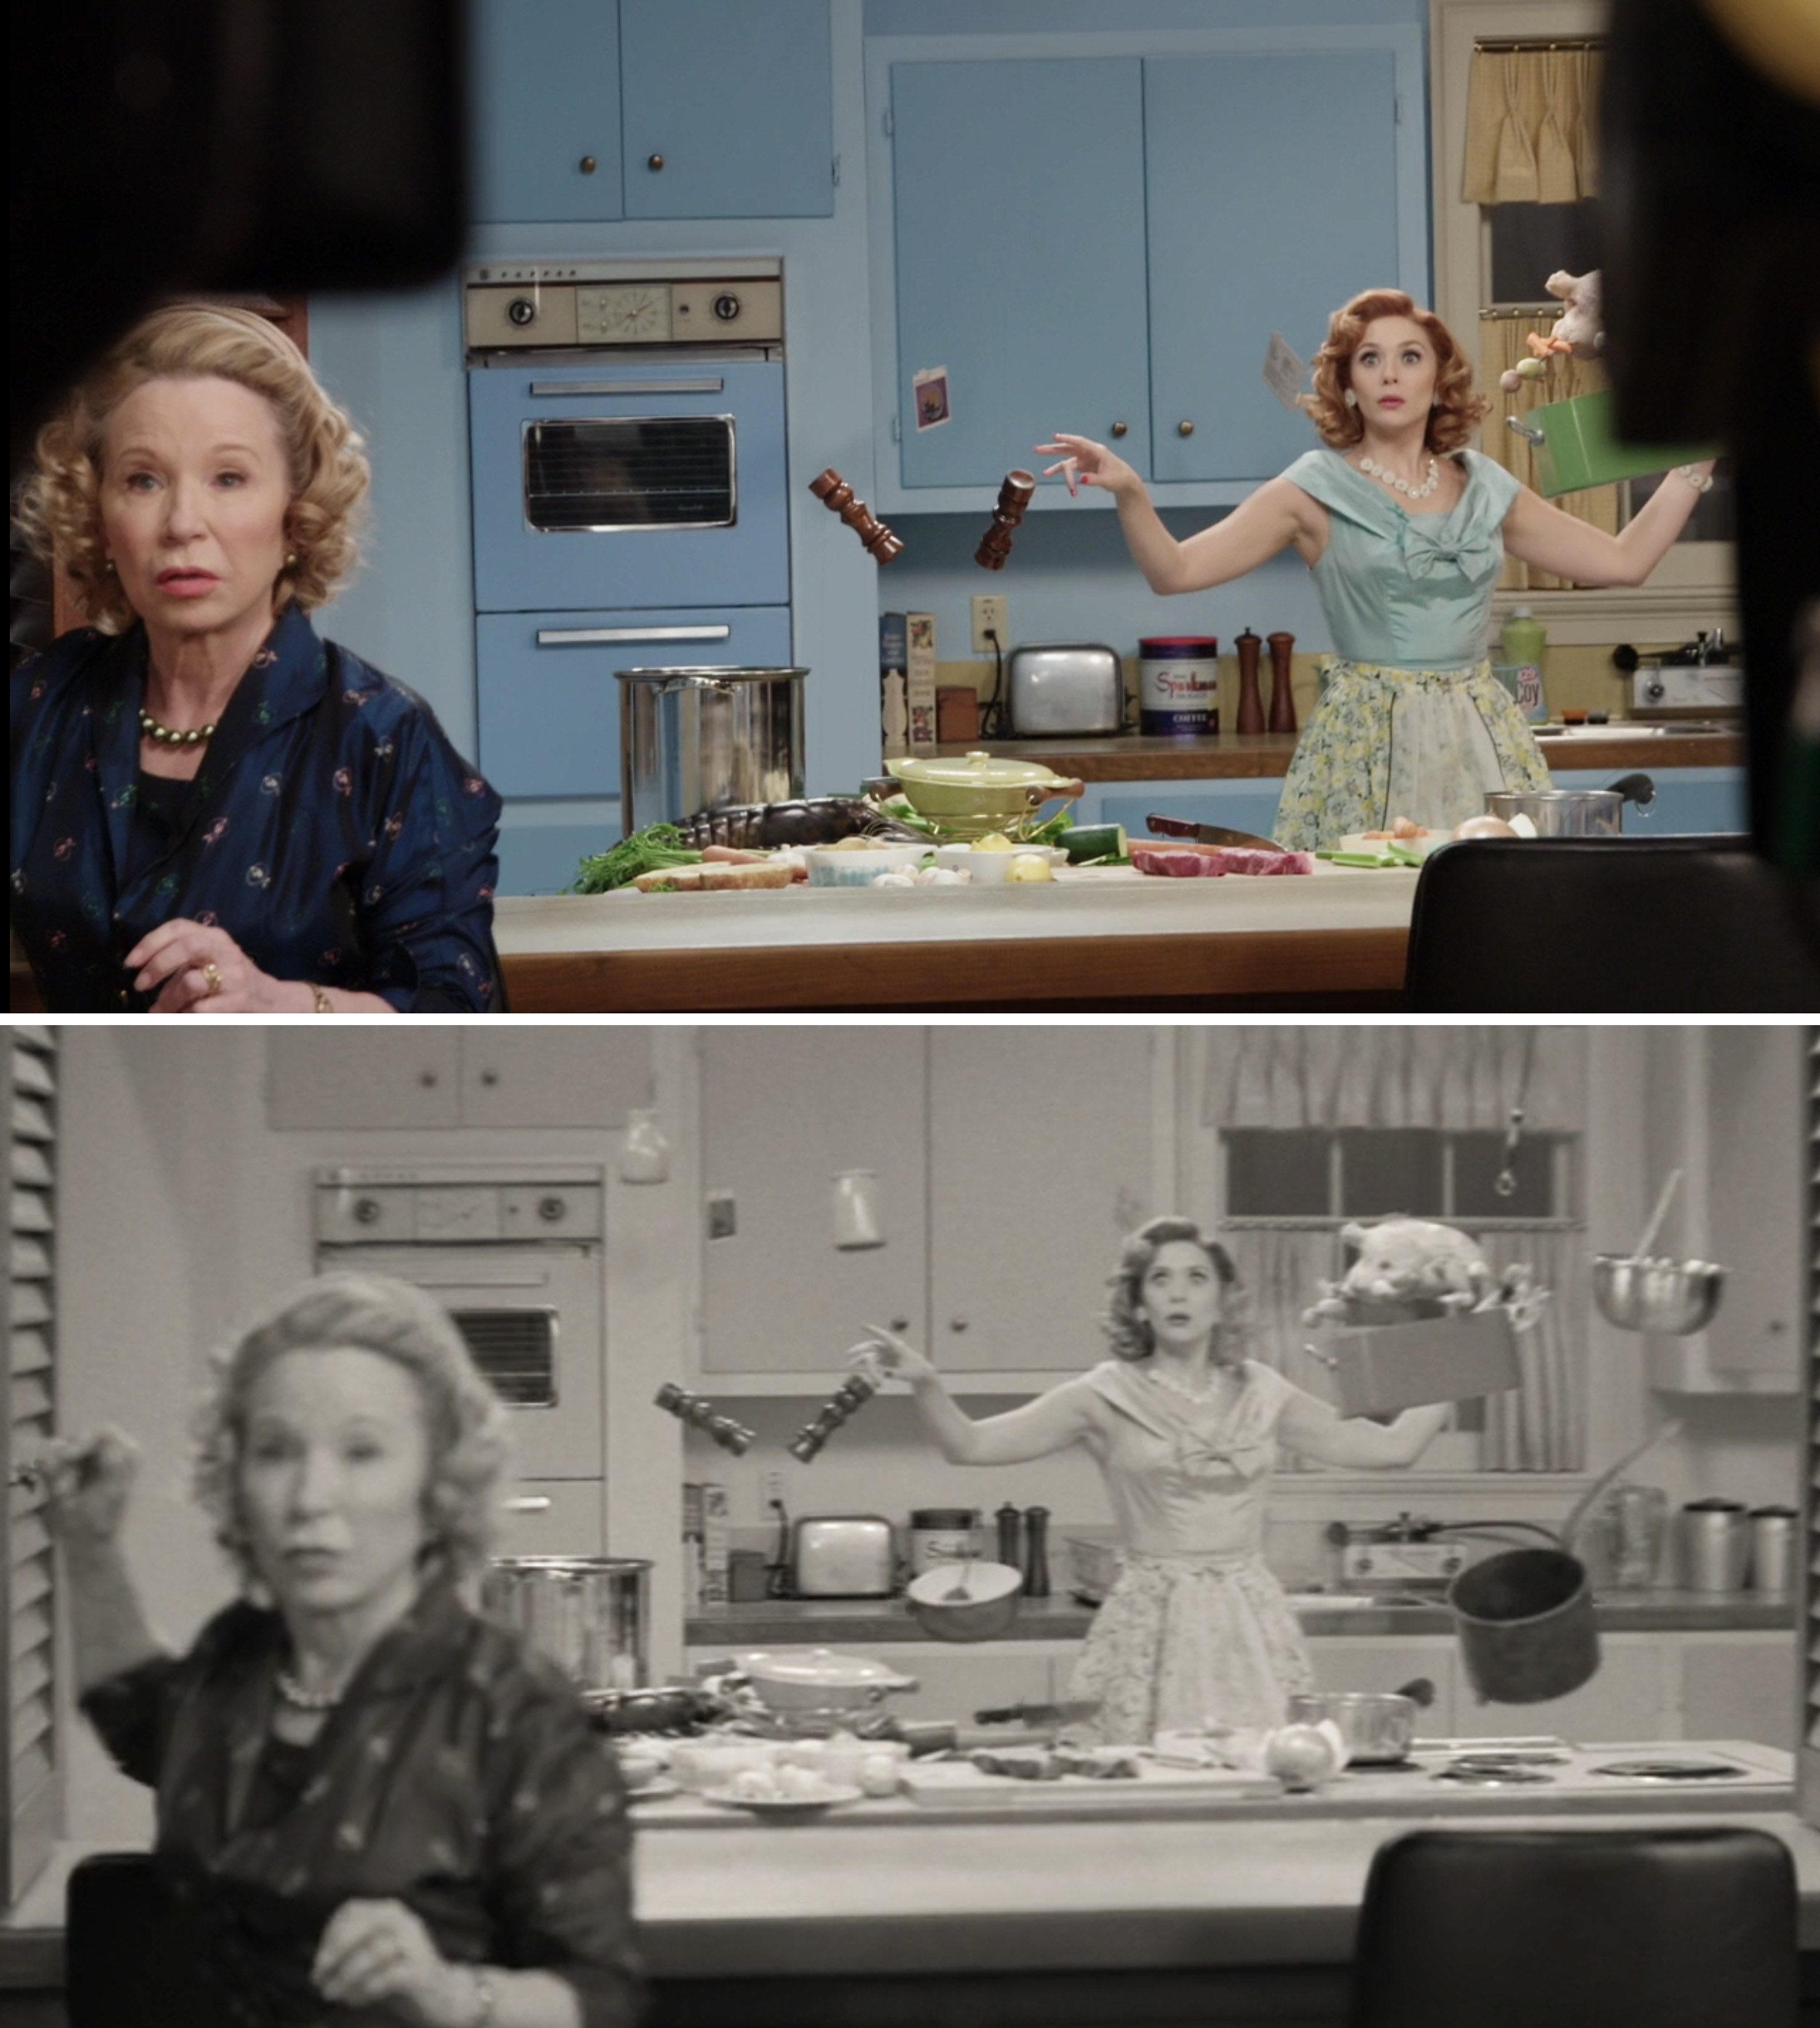 Elizabeth Olsen and Debra Jo Rupp filming a scene when Wanda has floating objects in the kitchen